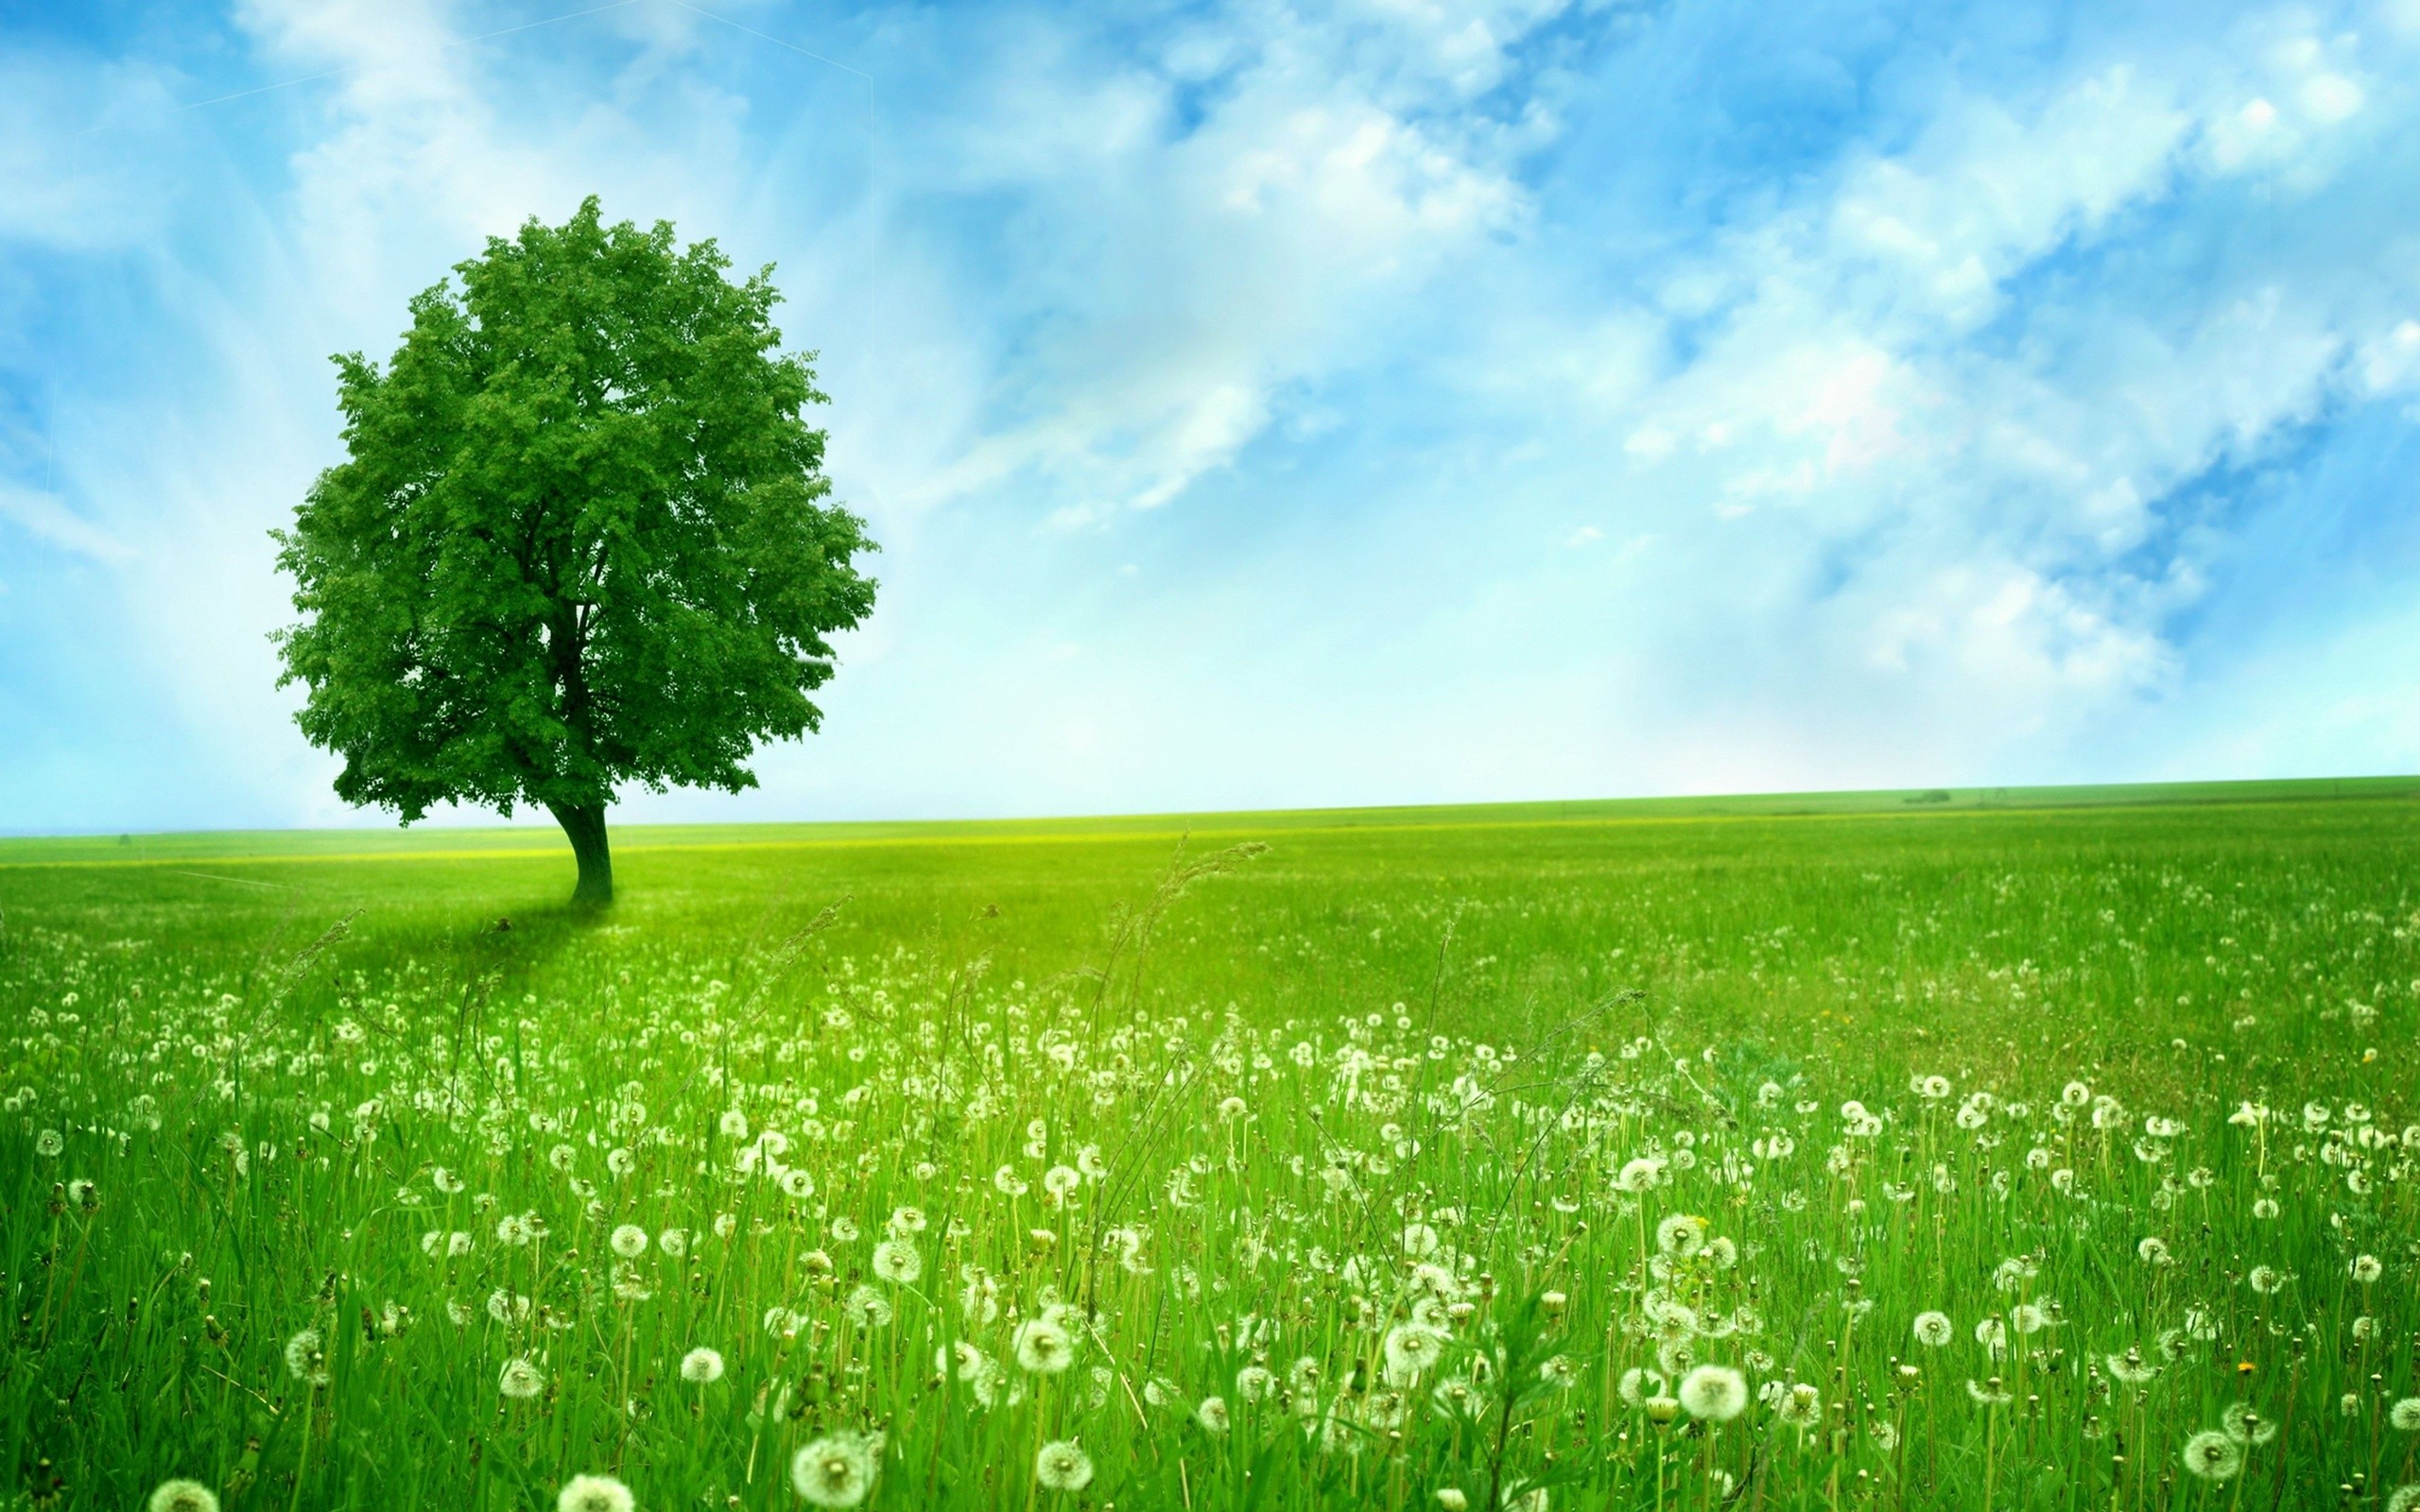 Green Tree In Dandelion Field HD Wallpaper Background Image